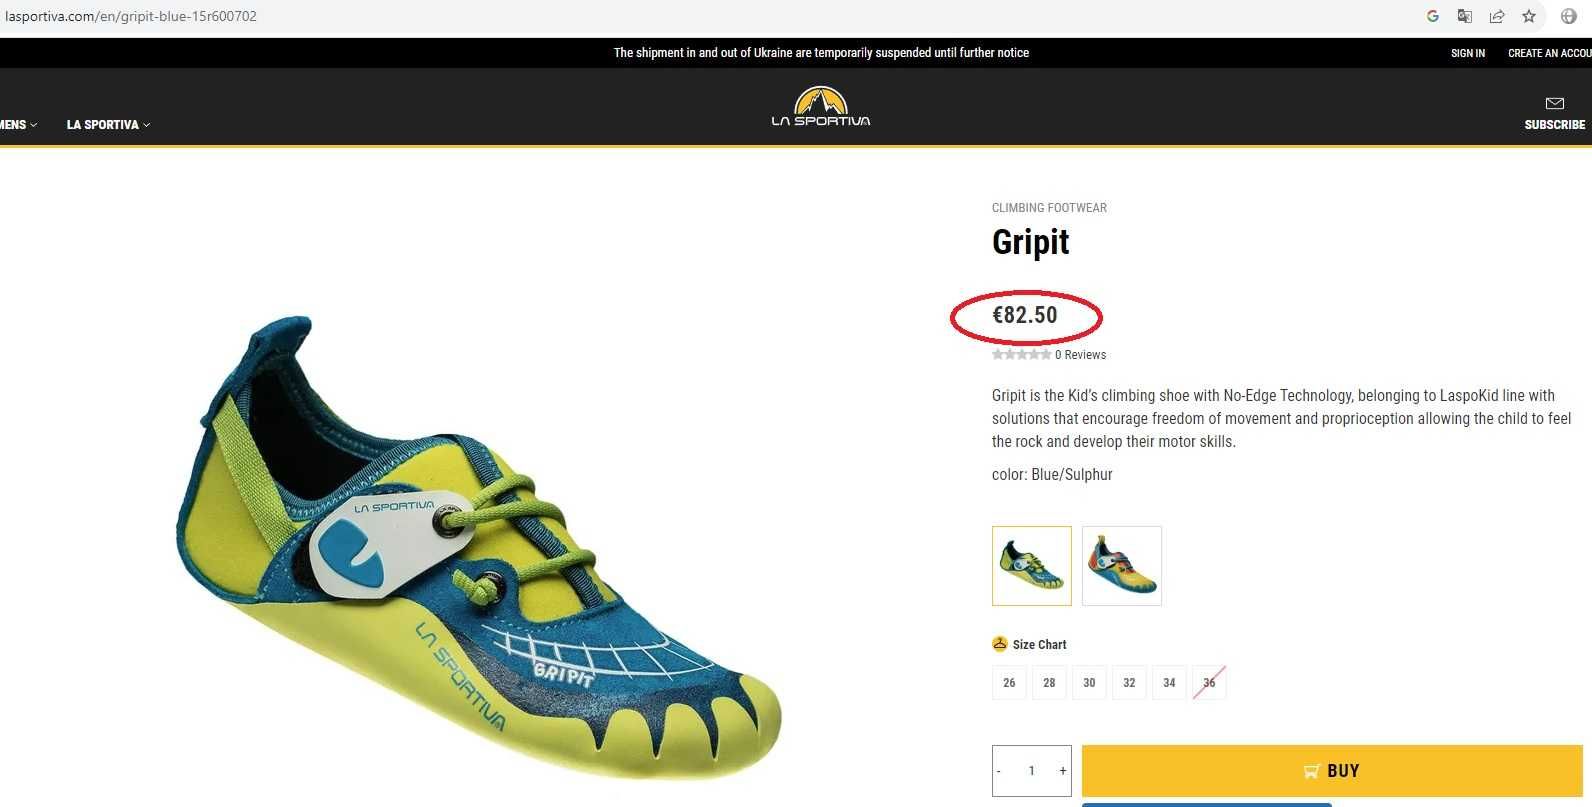 Скальные туфли La Sportiva Gripit - новые скальники детские